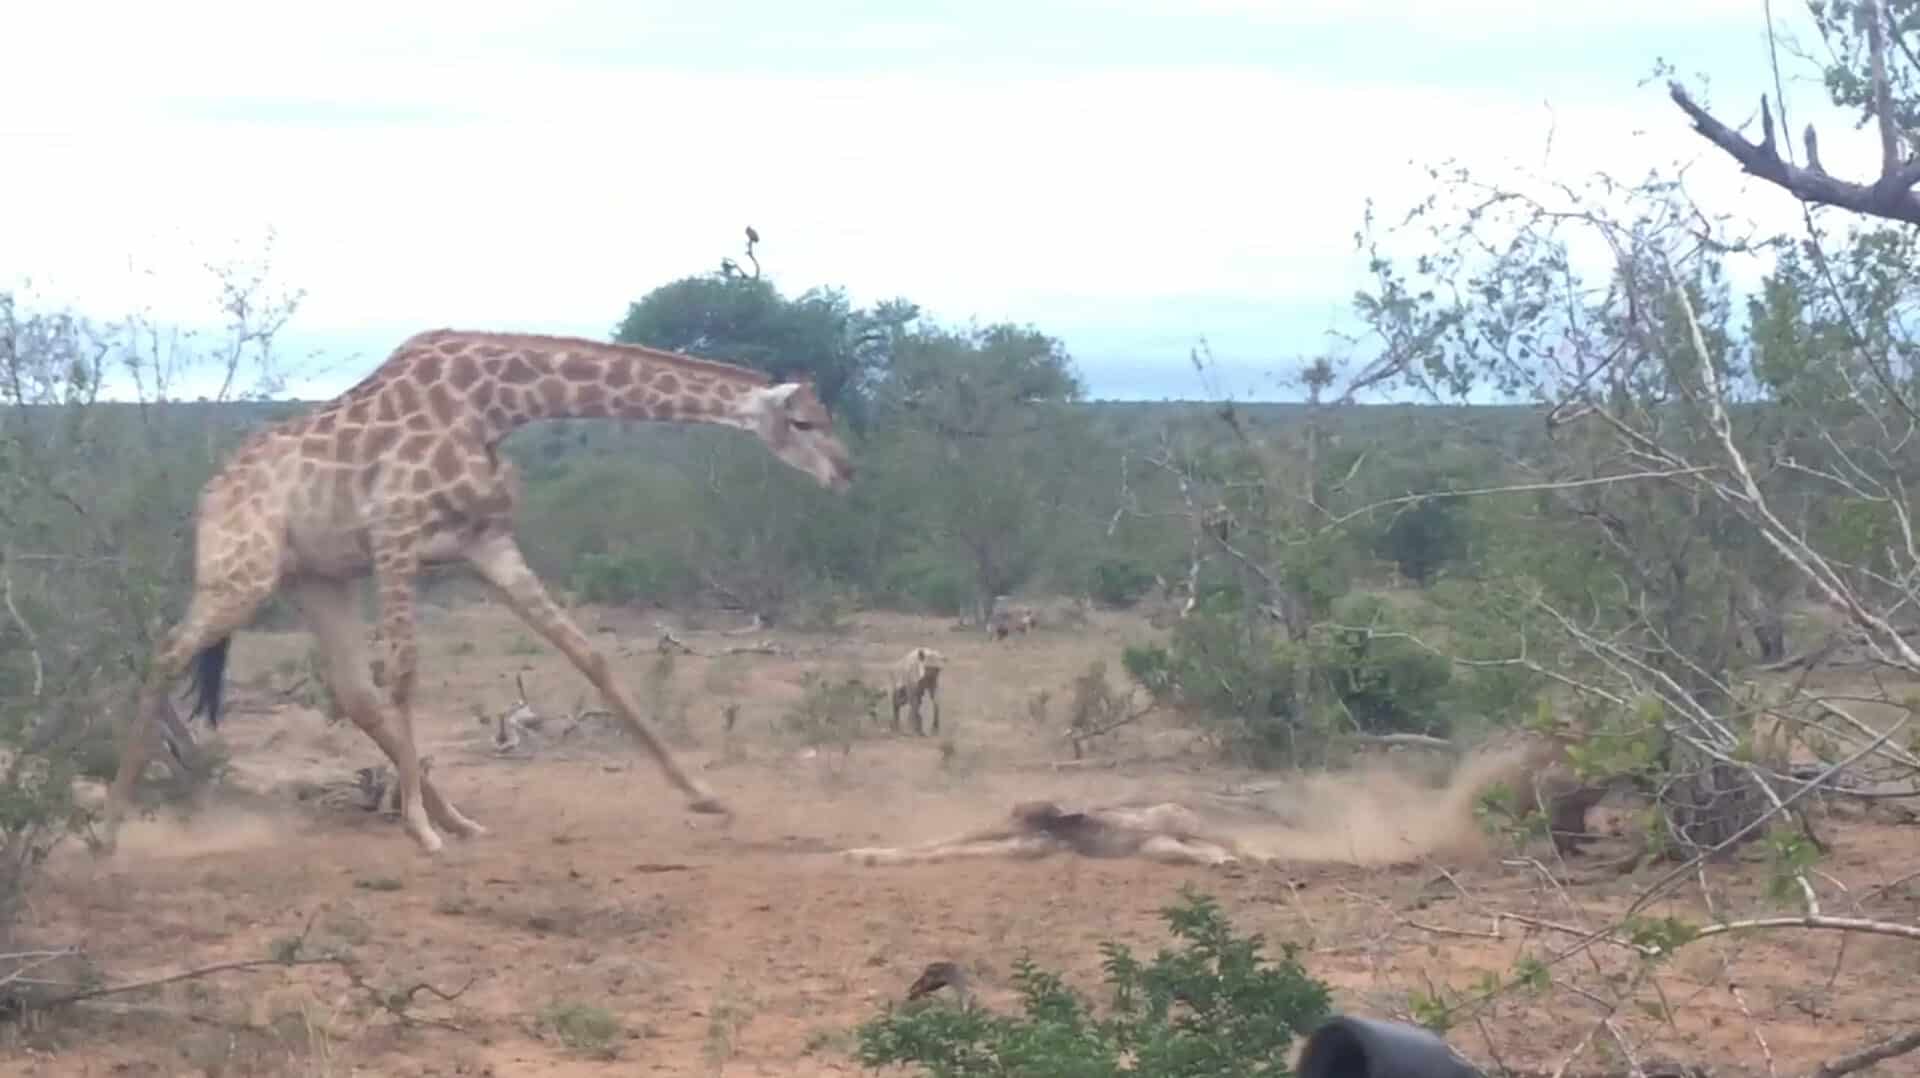 Giraffe tries to saʋe her calf